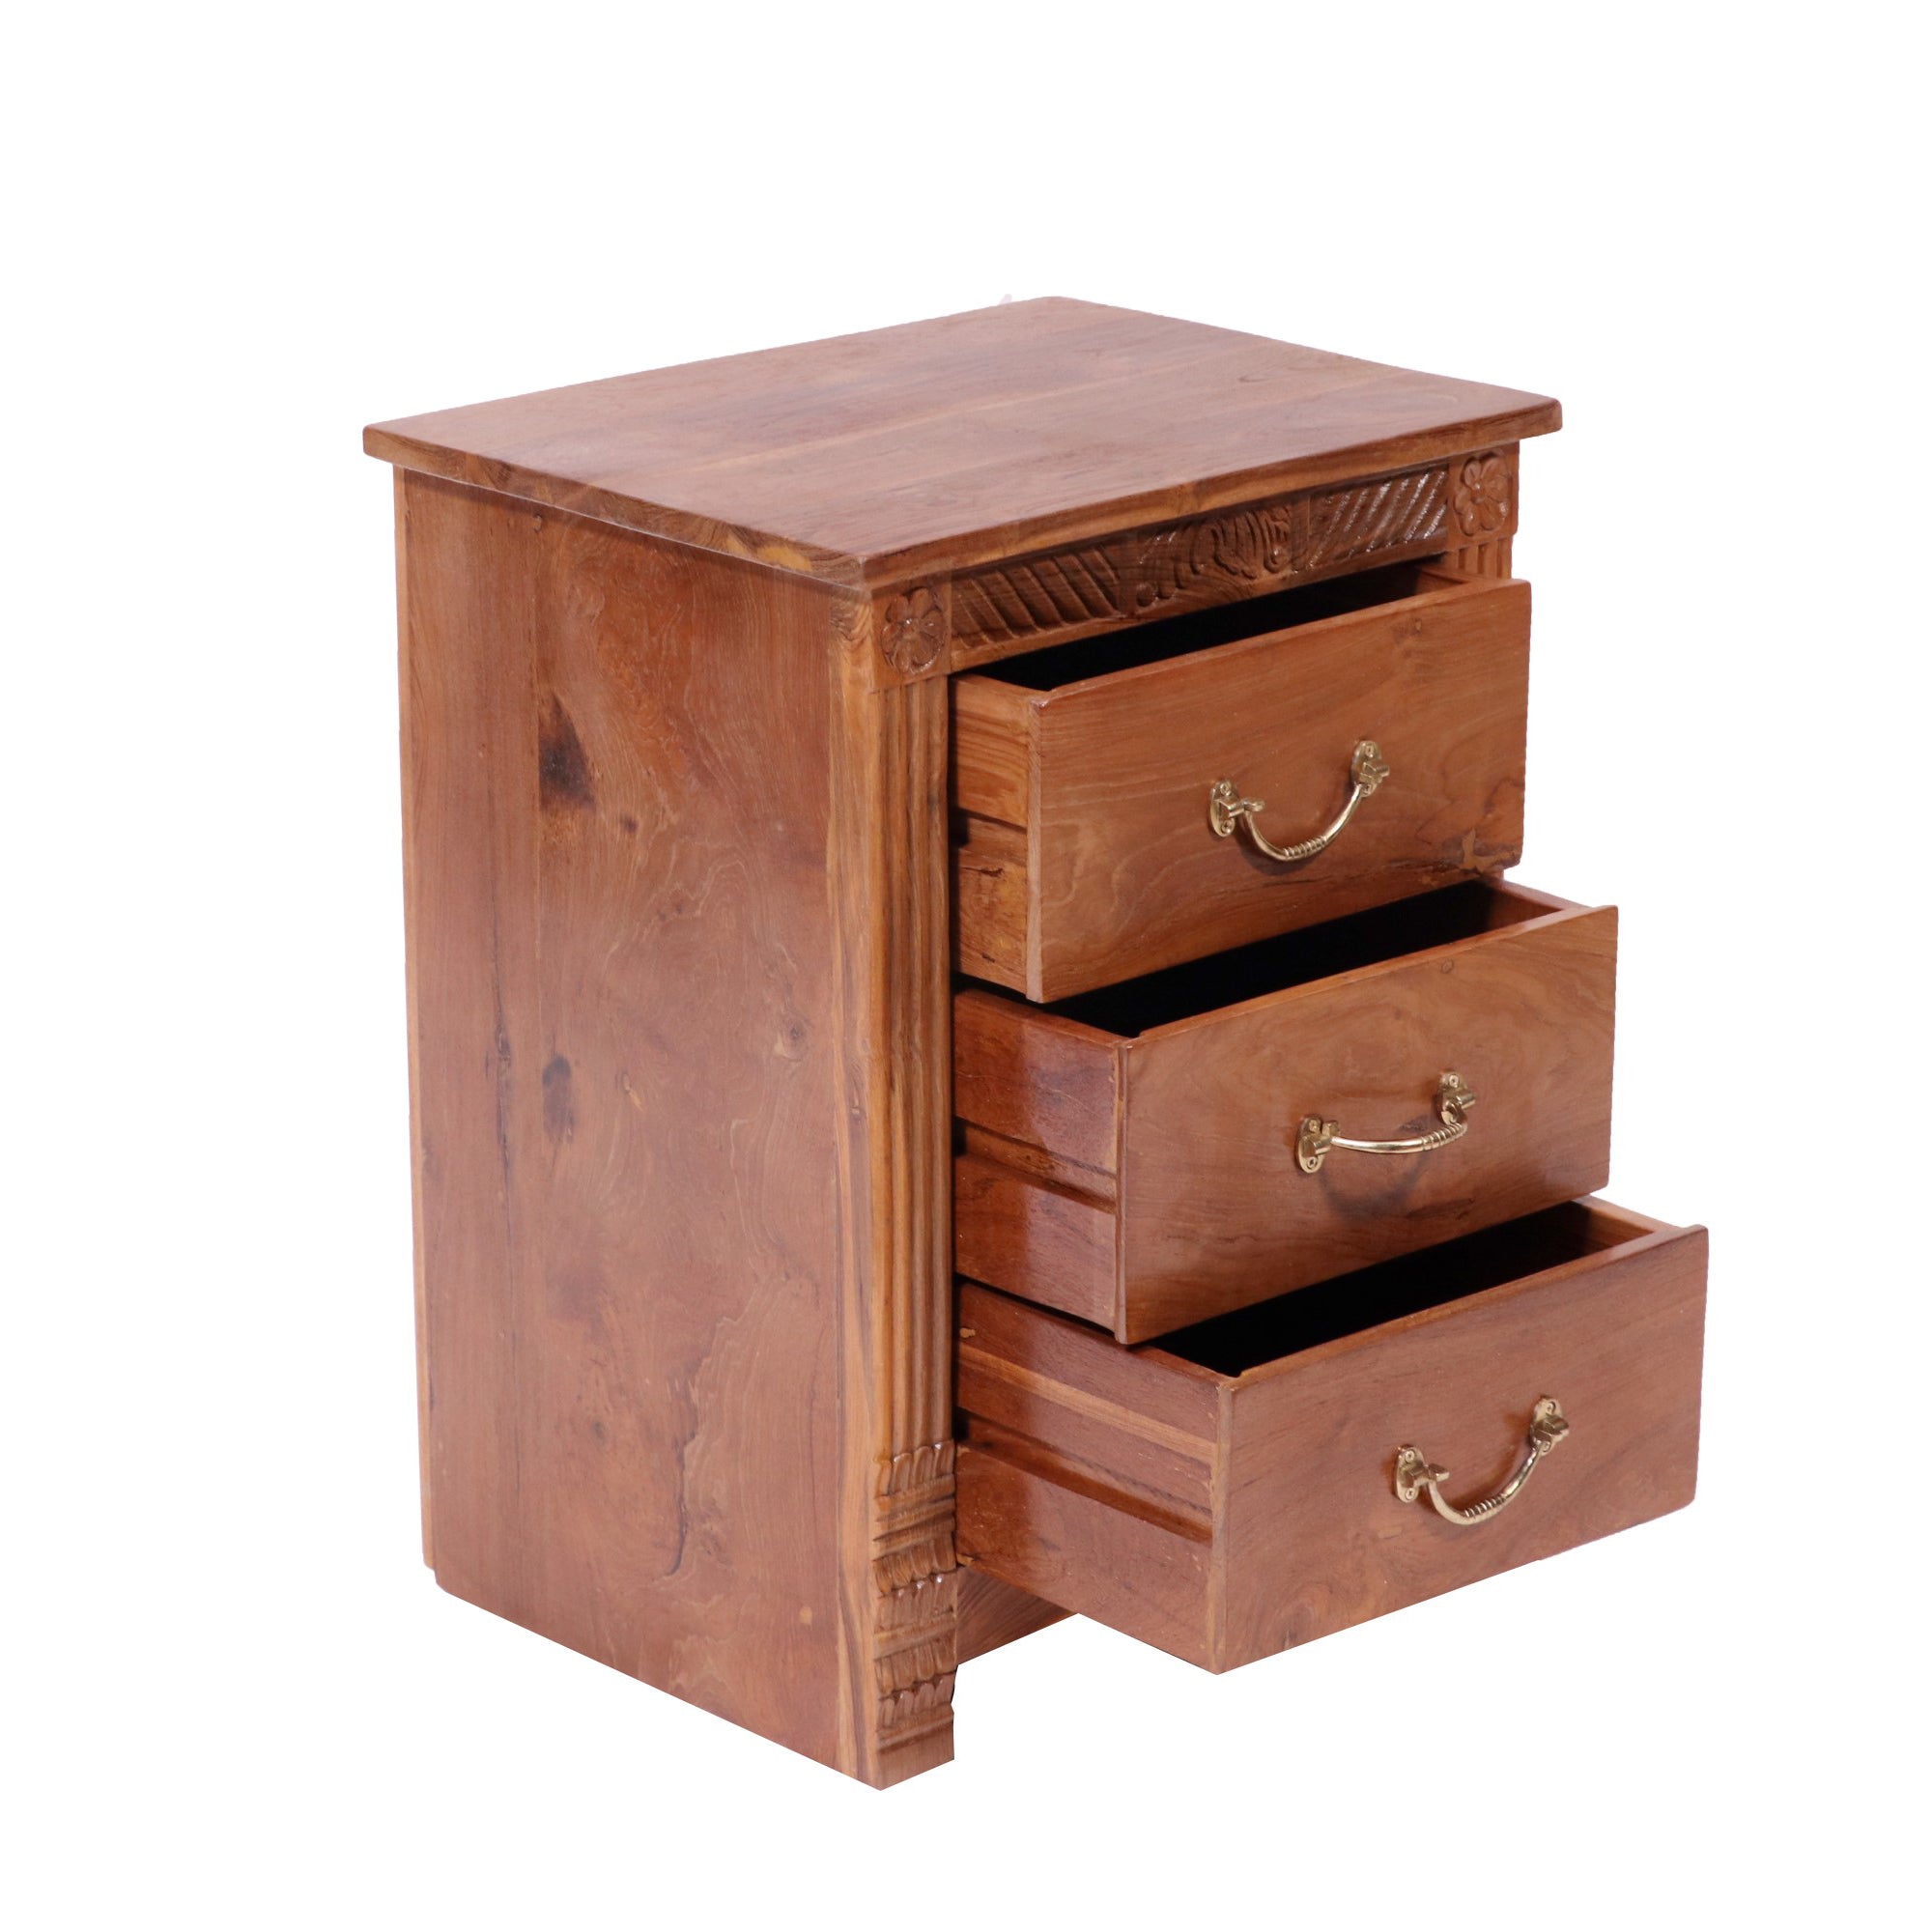 Folk concept Carved teak wood 3 drawer bedside Bedside